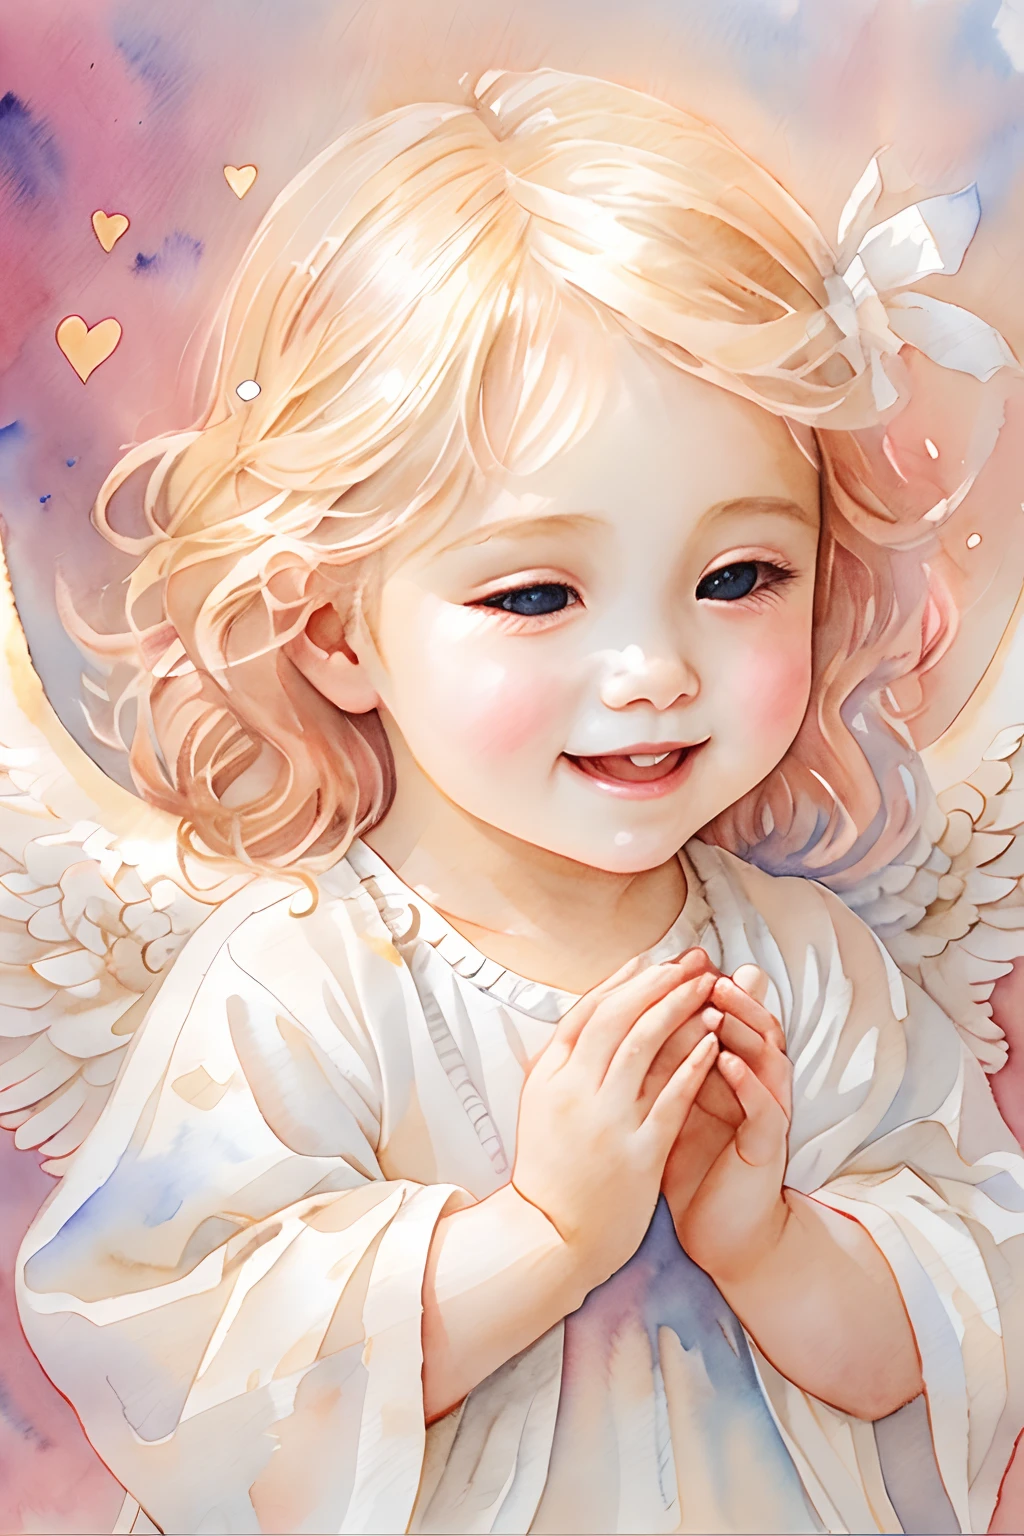 Bendiciones de los ángeles､fondo brillante、marca del corazon、sensibilidad､Una sonrisa、amable､Ángel bebé、pintura de acuarela